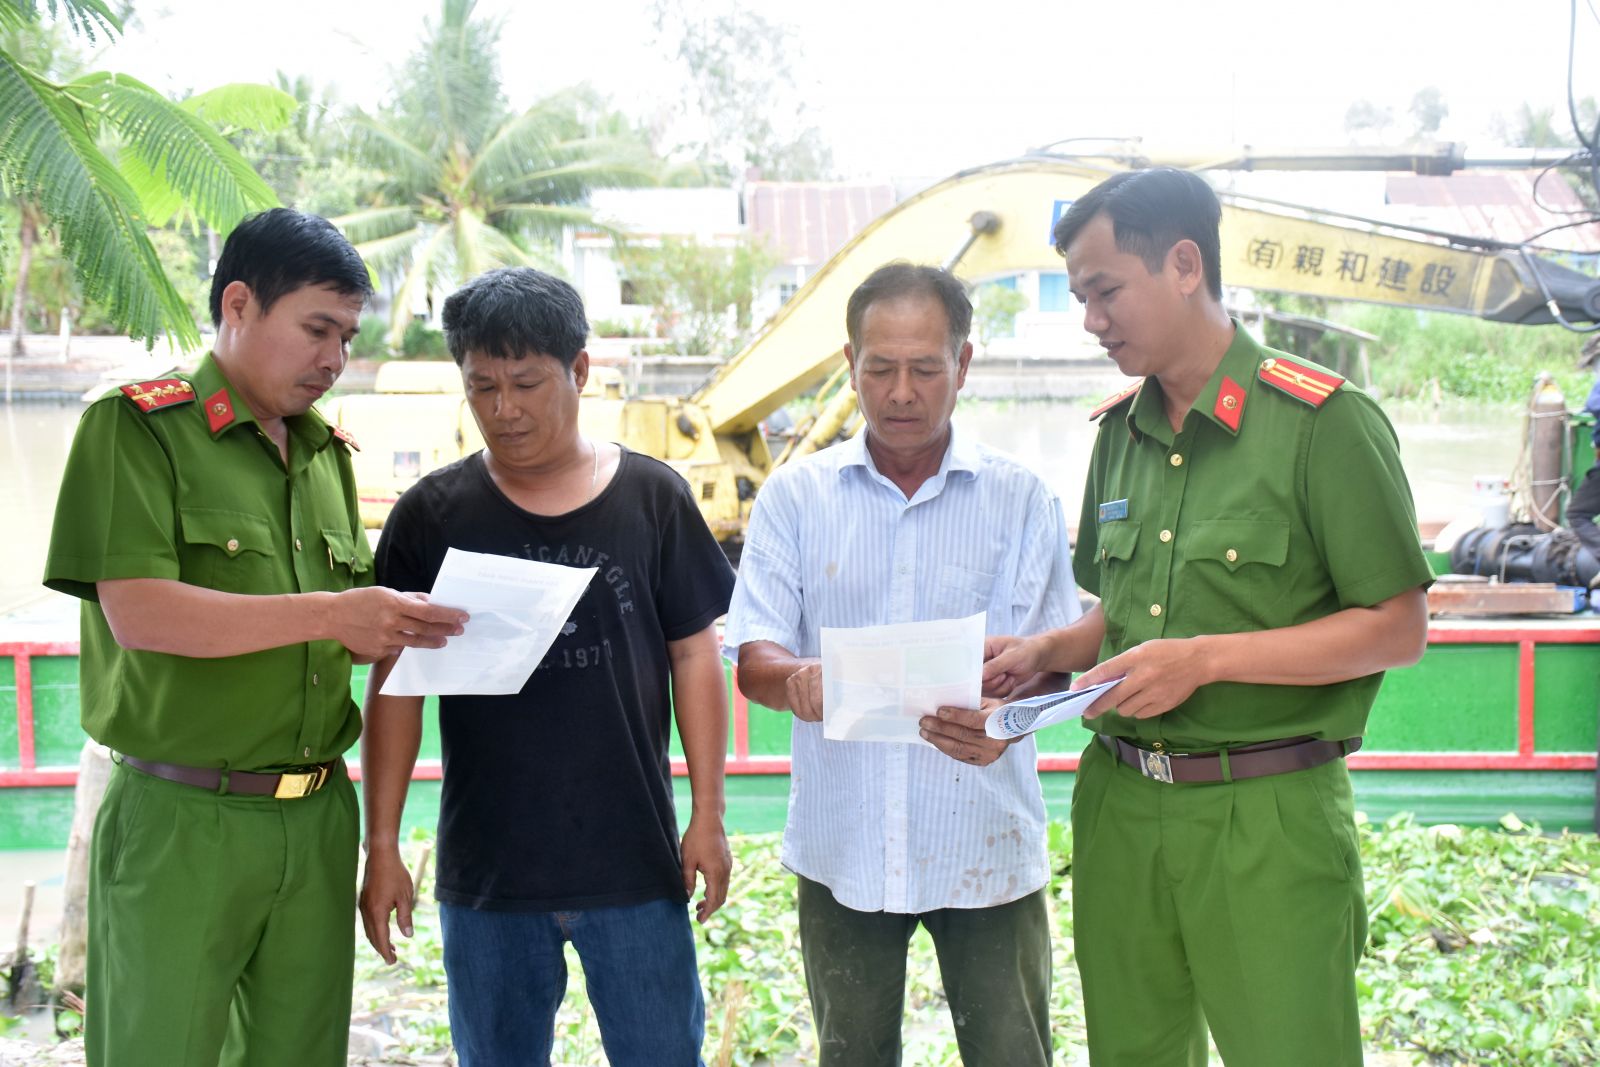 Hội Nông dân tỉnh Quảng Ngãi đẩy mạnh tuyên truyền vận động hội viên nông dân tham gia bảo đảm an ninh, trật tự trên địa bàn tỉnh